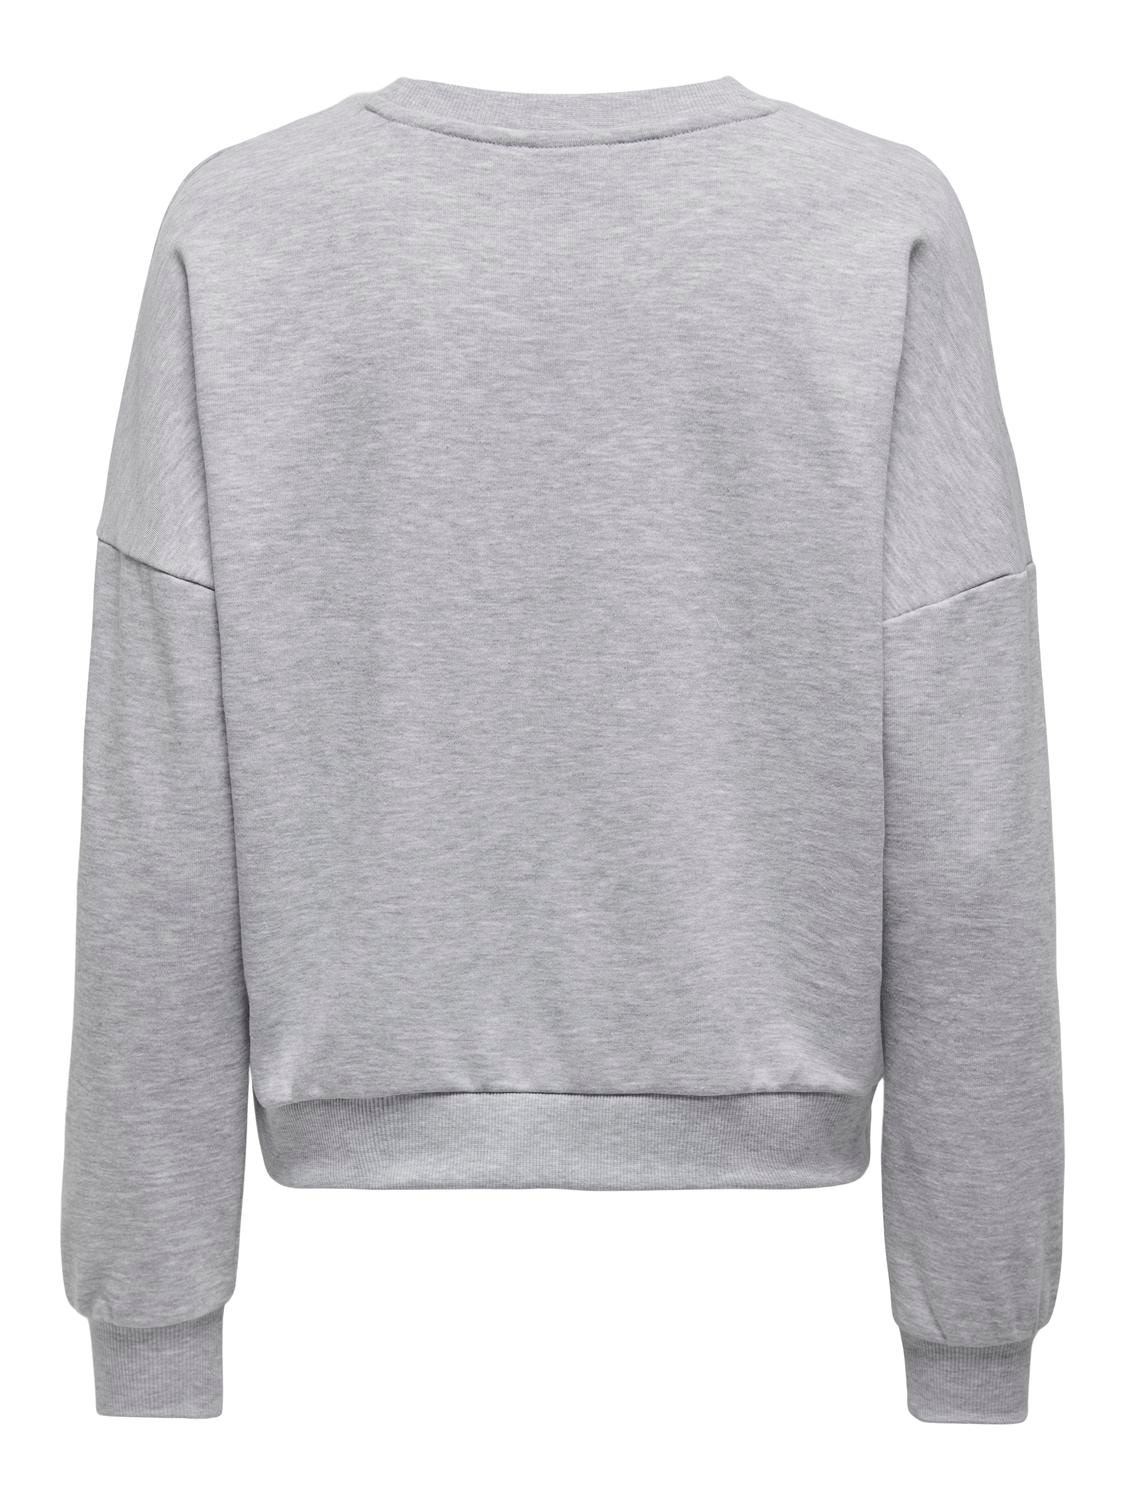 ONLY Solid color sweatshirt -Light Grey Melange - 15321400